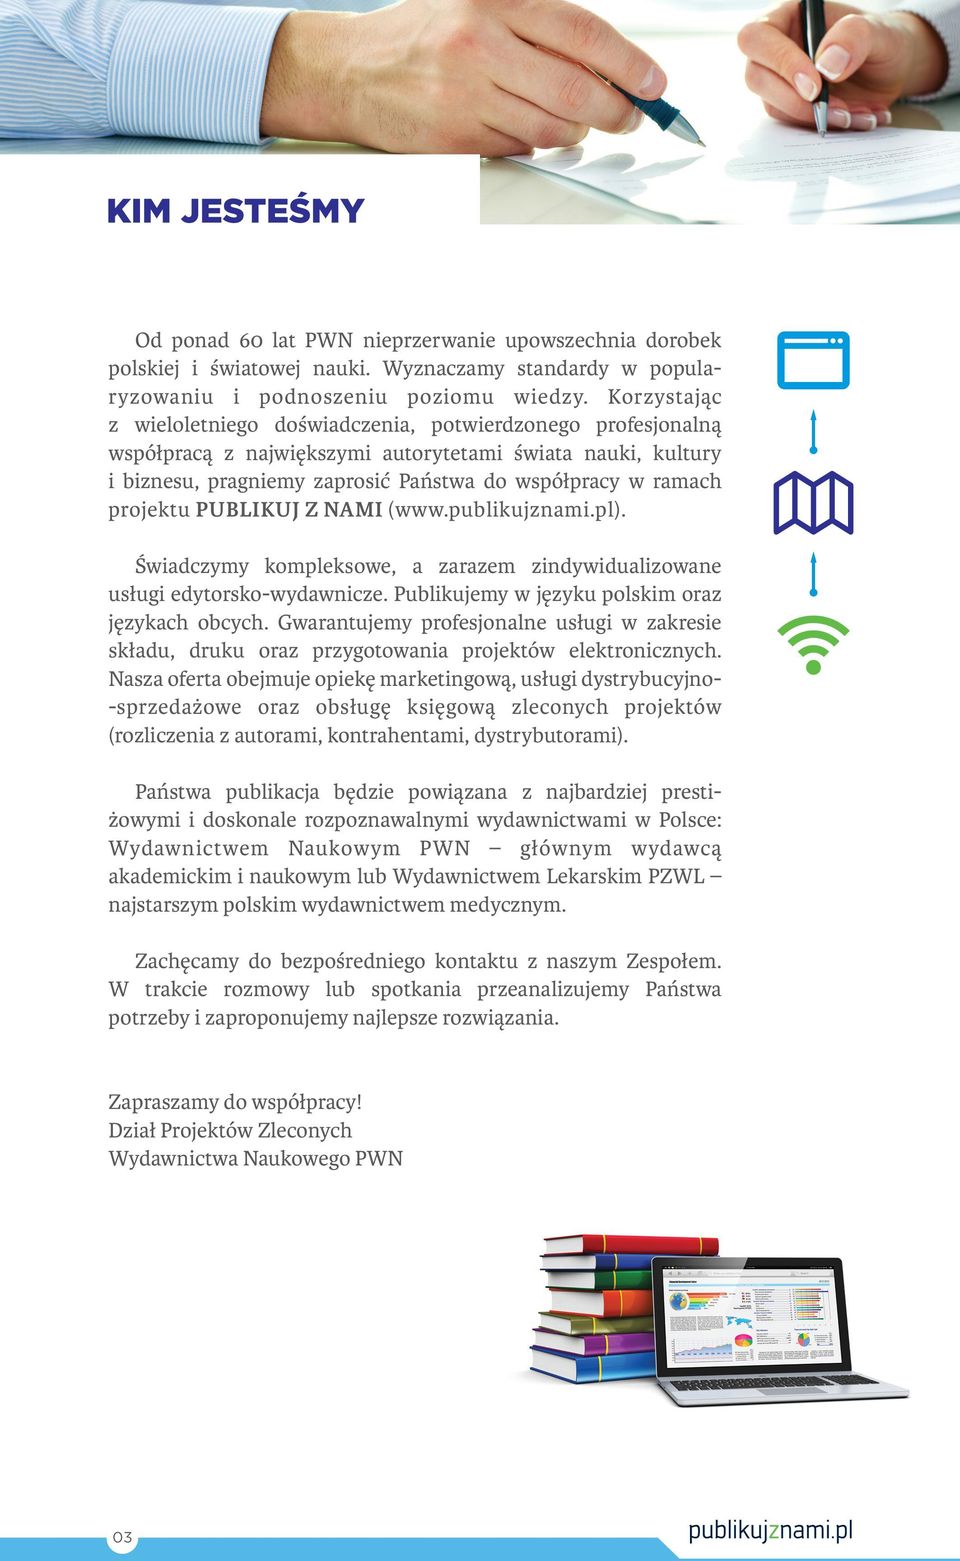 projektu PUBLIKUJ Z NAMI (www.publikujznami.pl). Świadczymy kompleksowe, a zarazem zindywidualizowane usługi edytorsko-wydawnicze. Publikujemy w języku polskim oraz językach obcych.